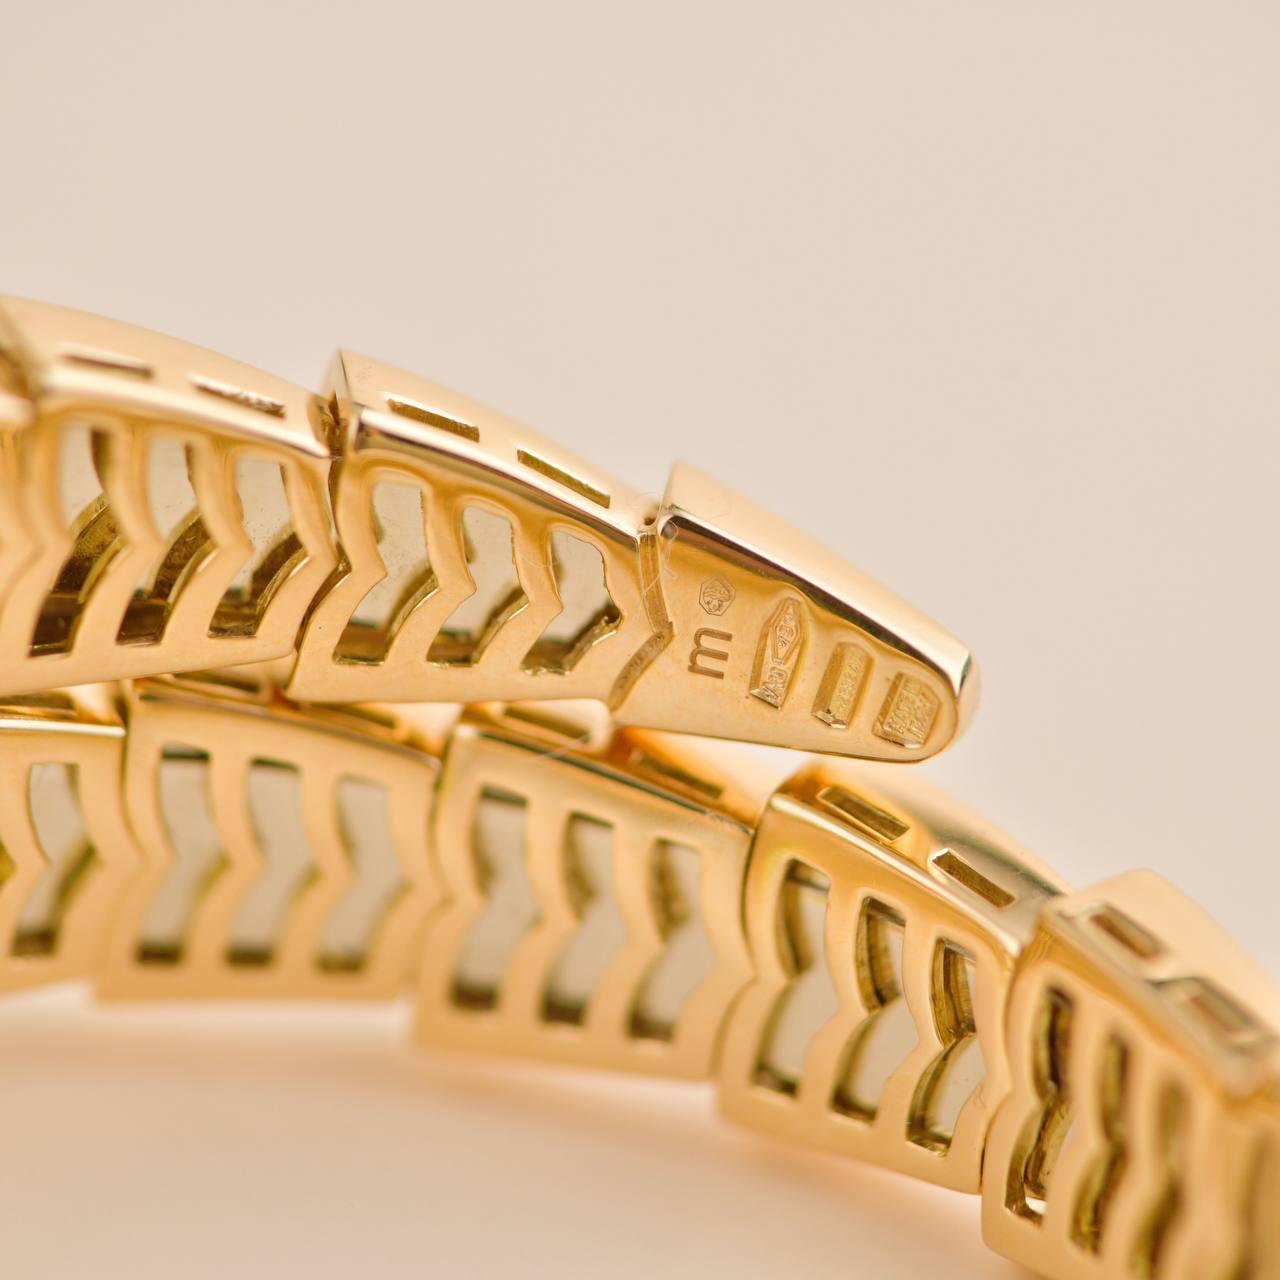 Bulgair Serpenti Pave Diamond Peridot 18k Yellow Gold Bracelet Size M For Sale 1